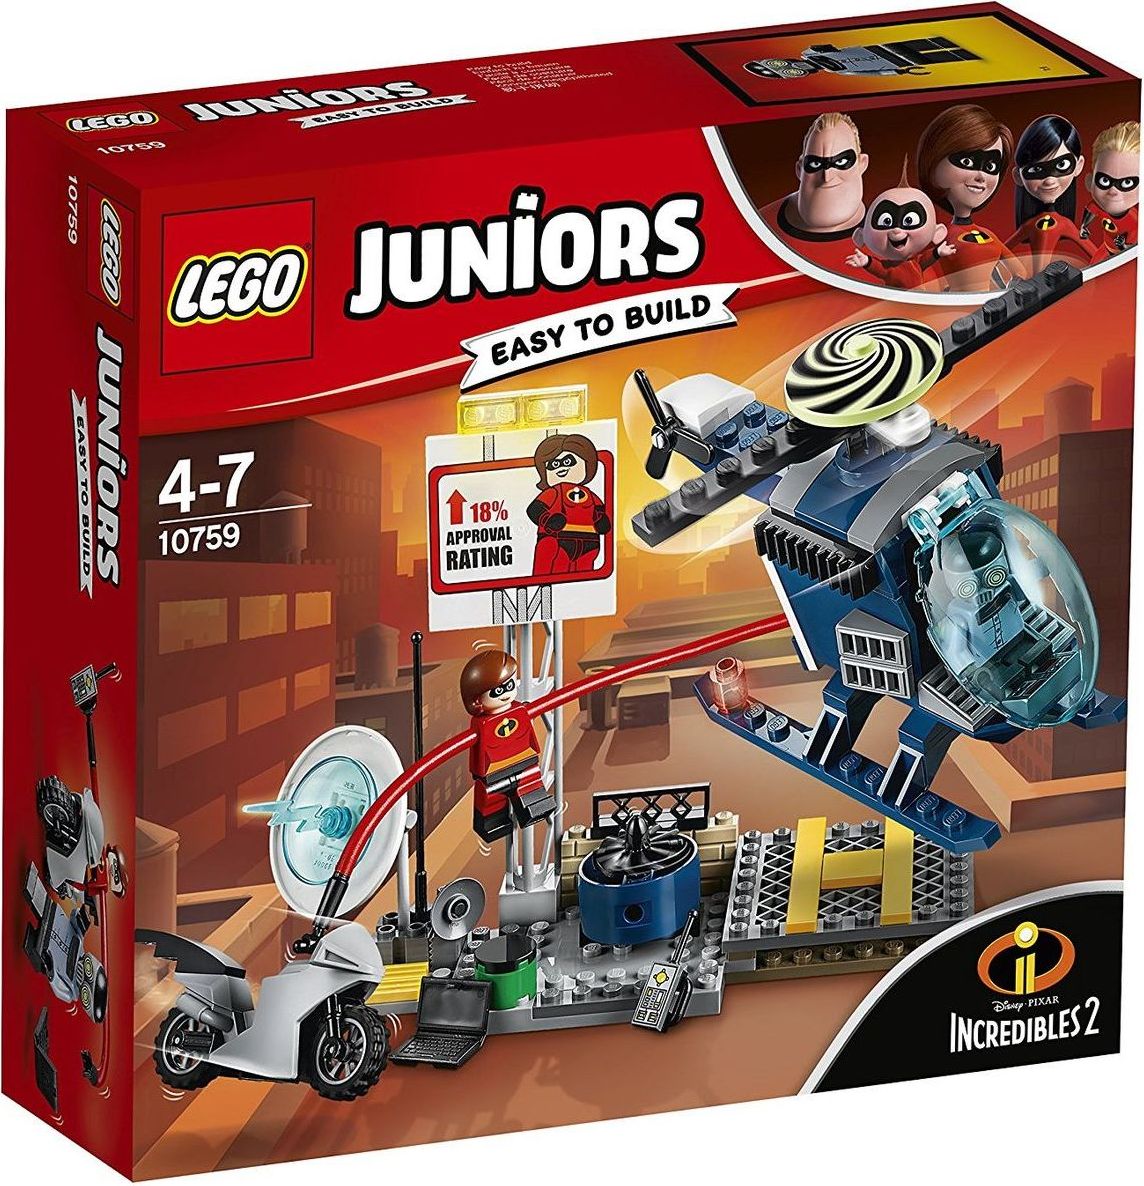 LEGO Juniors 10759 Elastižena: pronásledování na střeše - obrázek 1